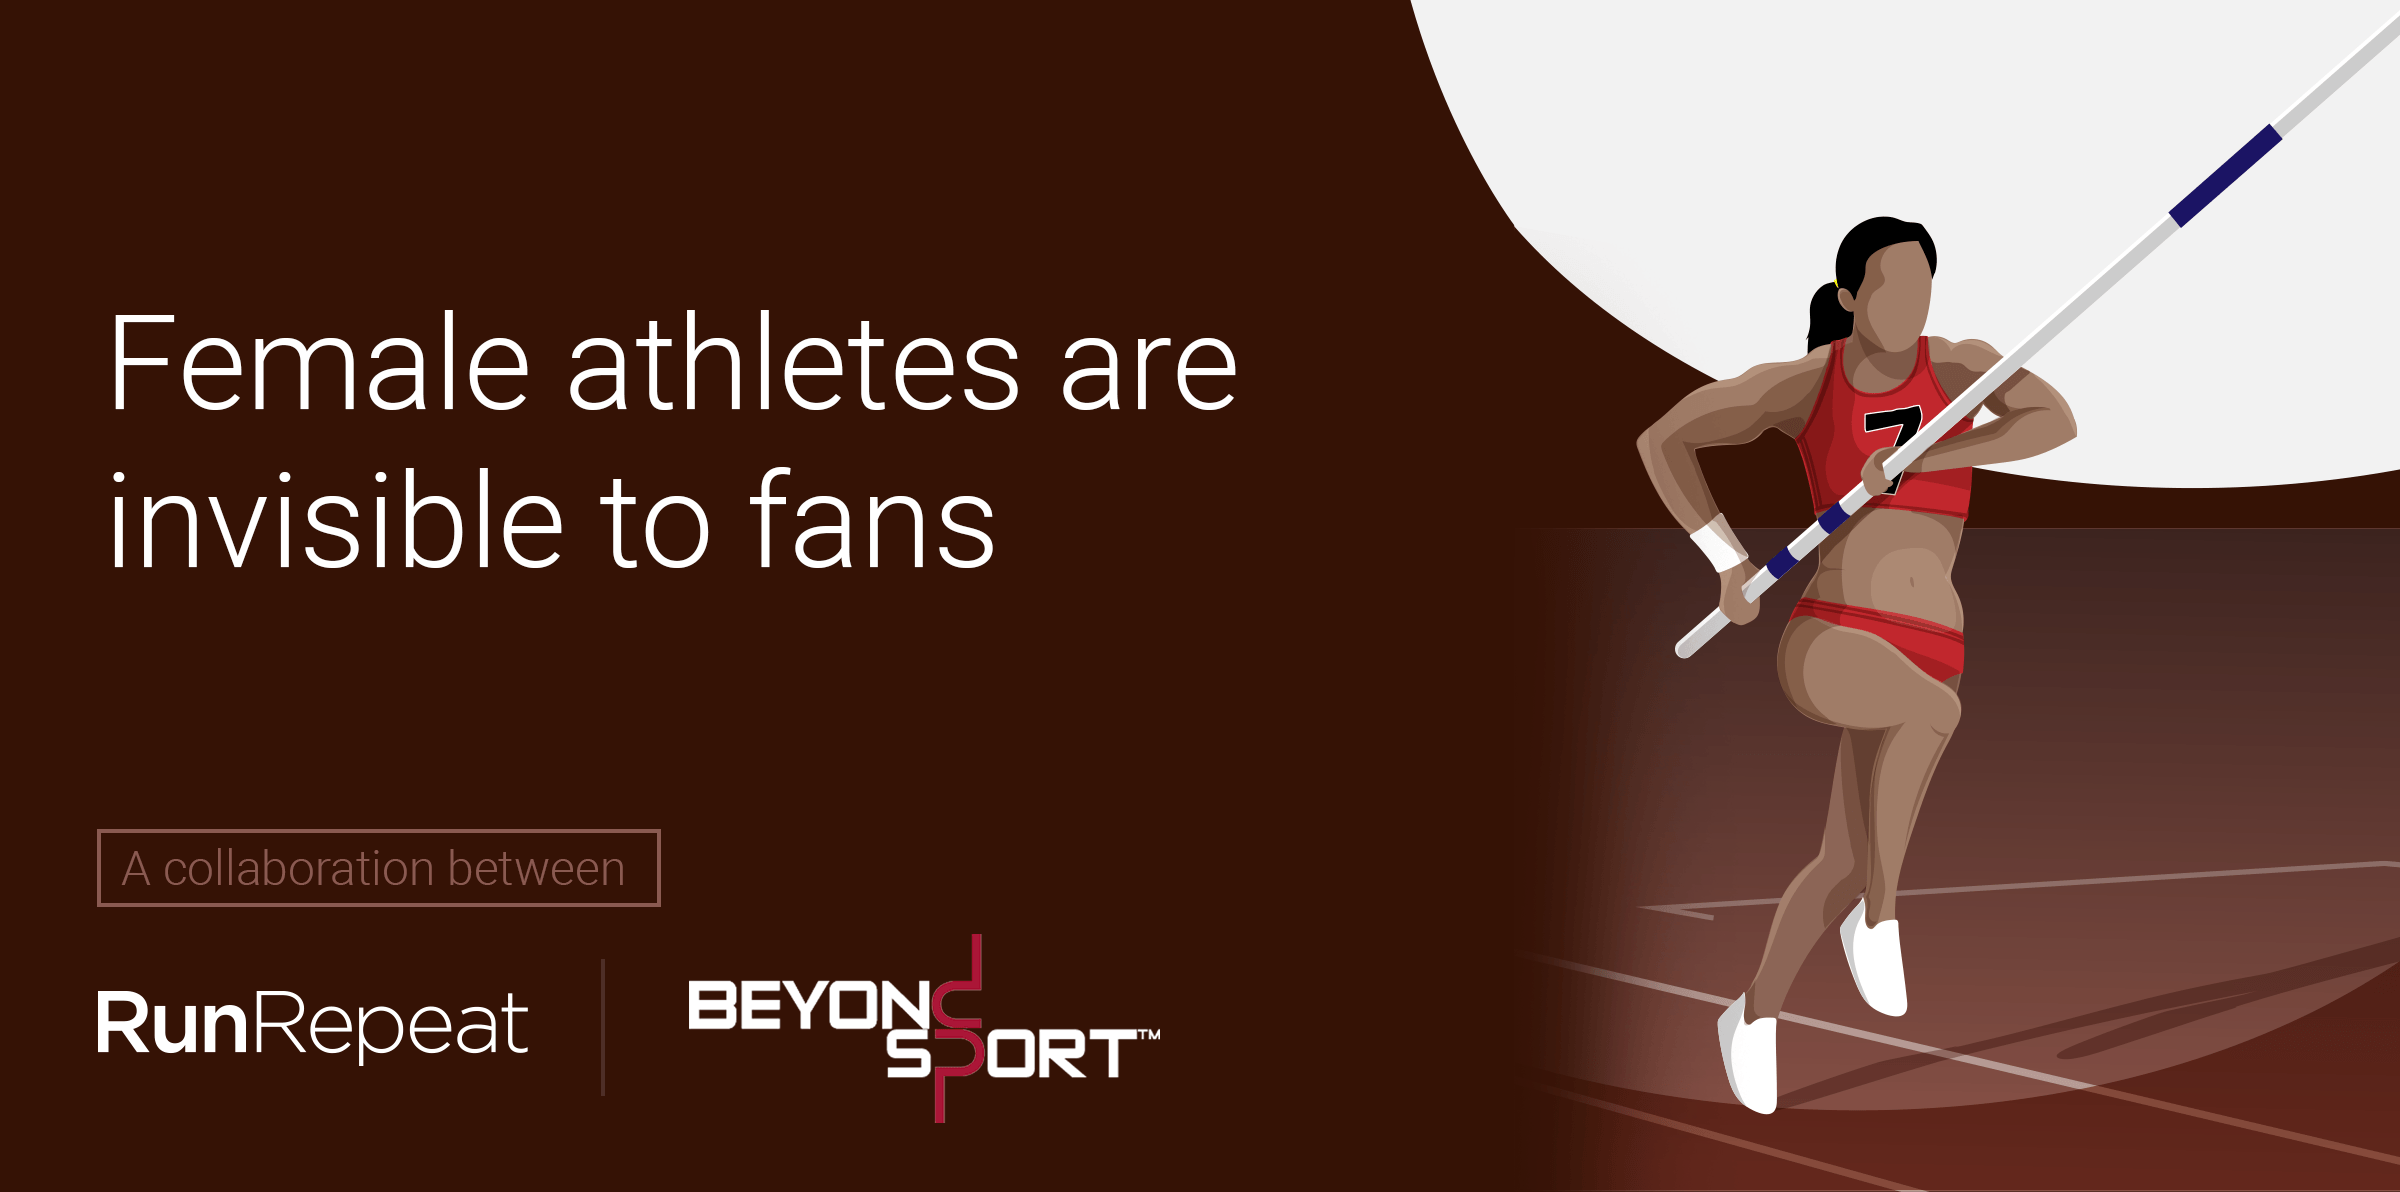 Las deportistas son invisibles para los aficionados (encuesta a 2.117 personas)